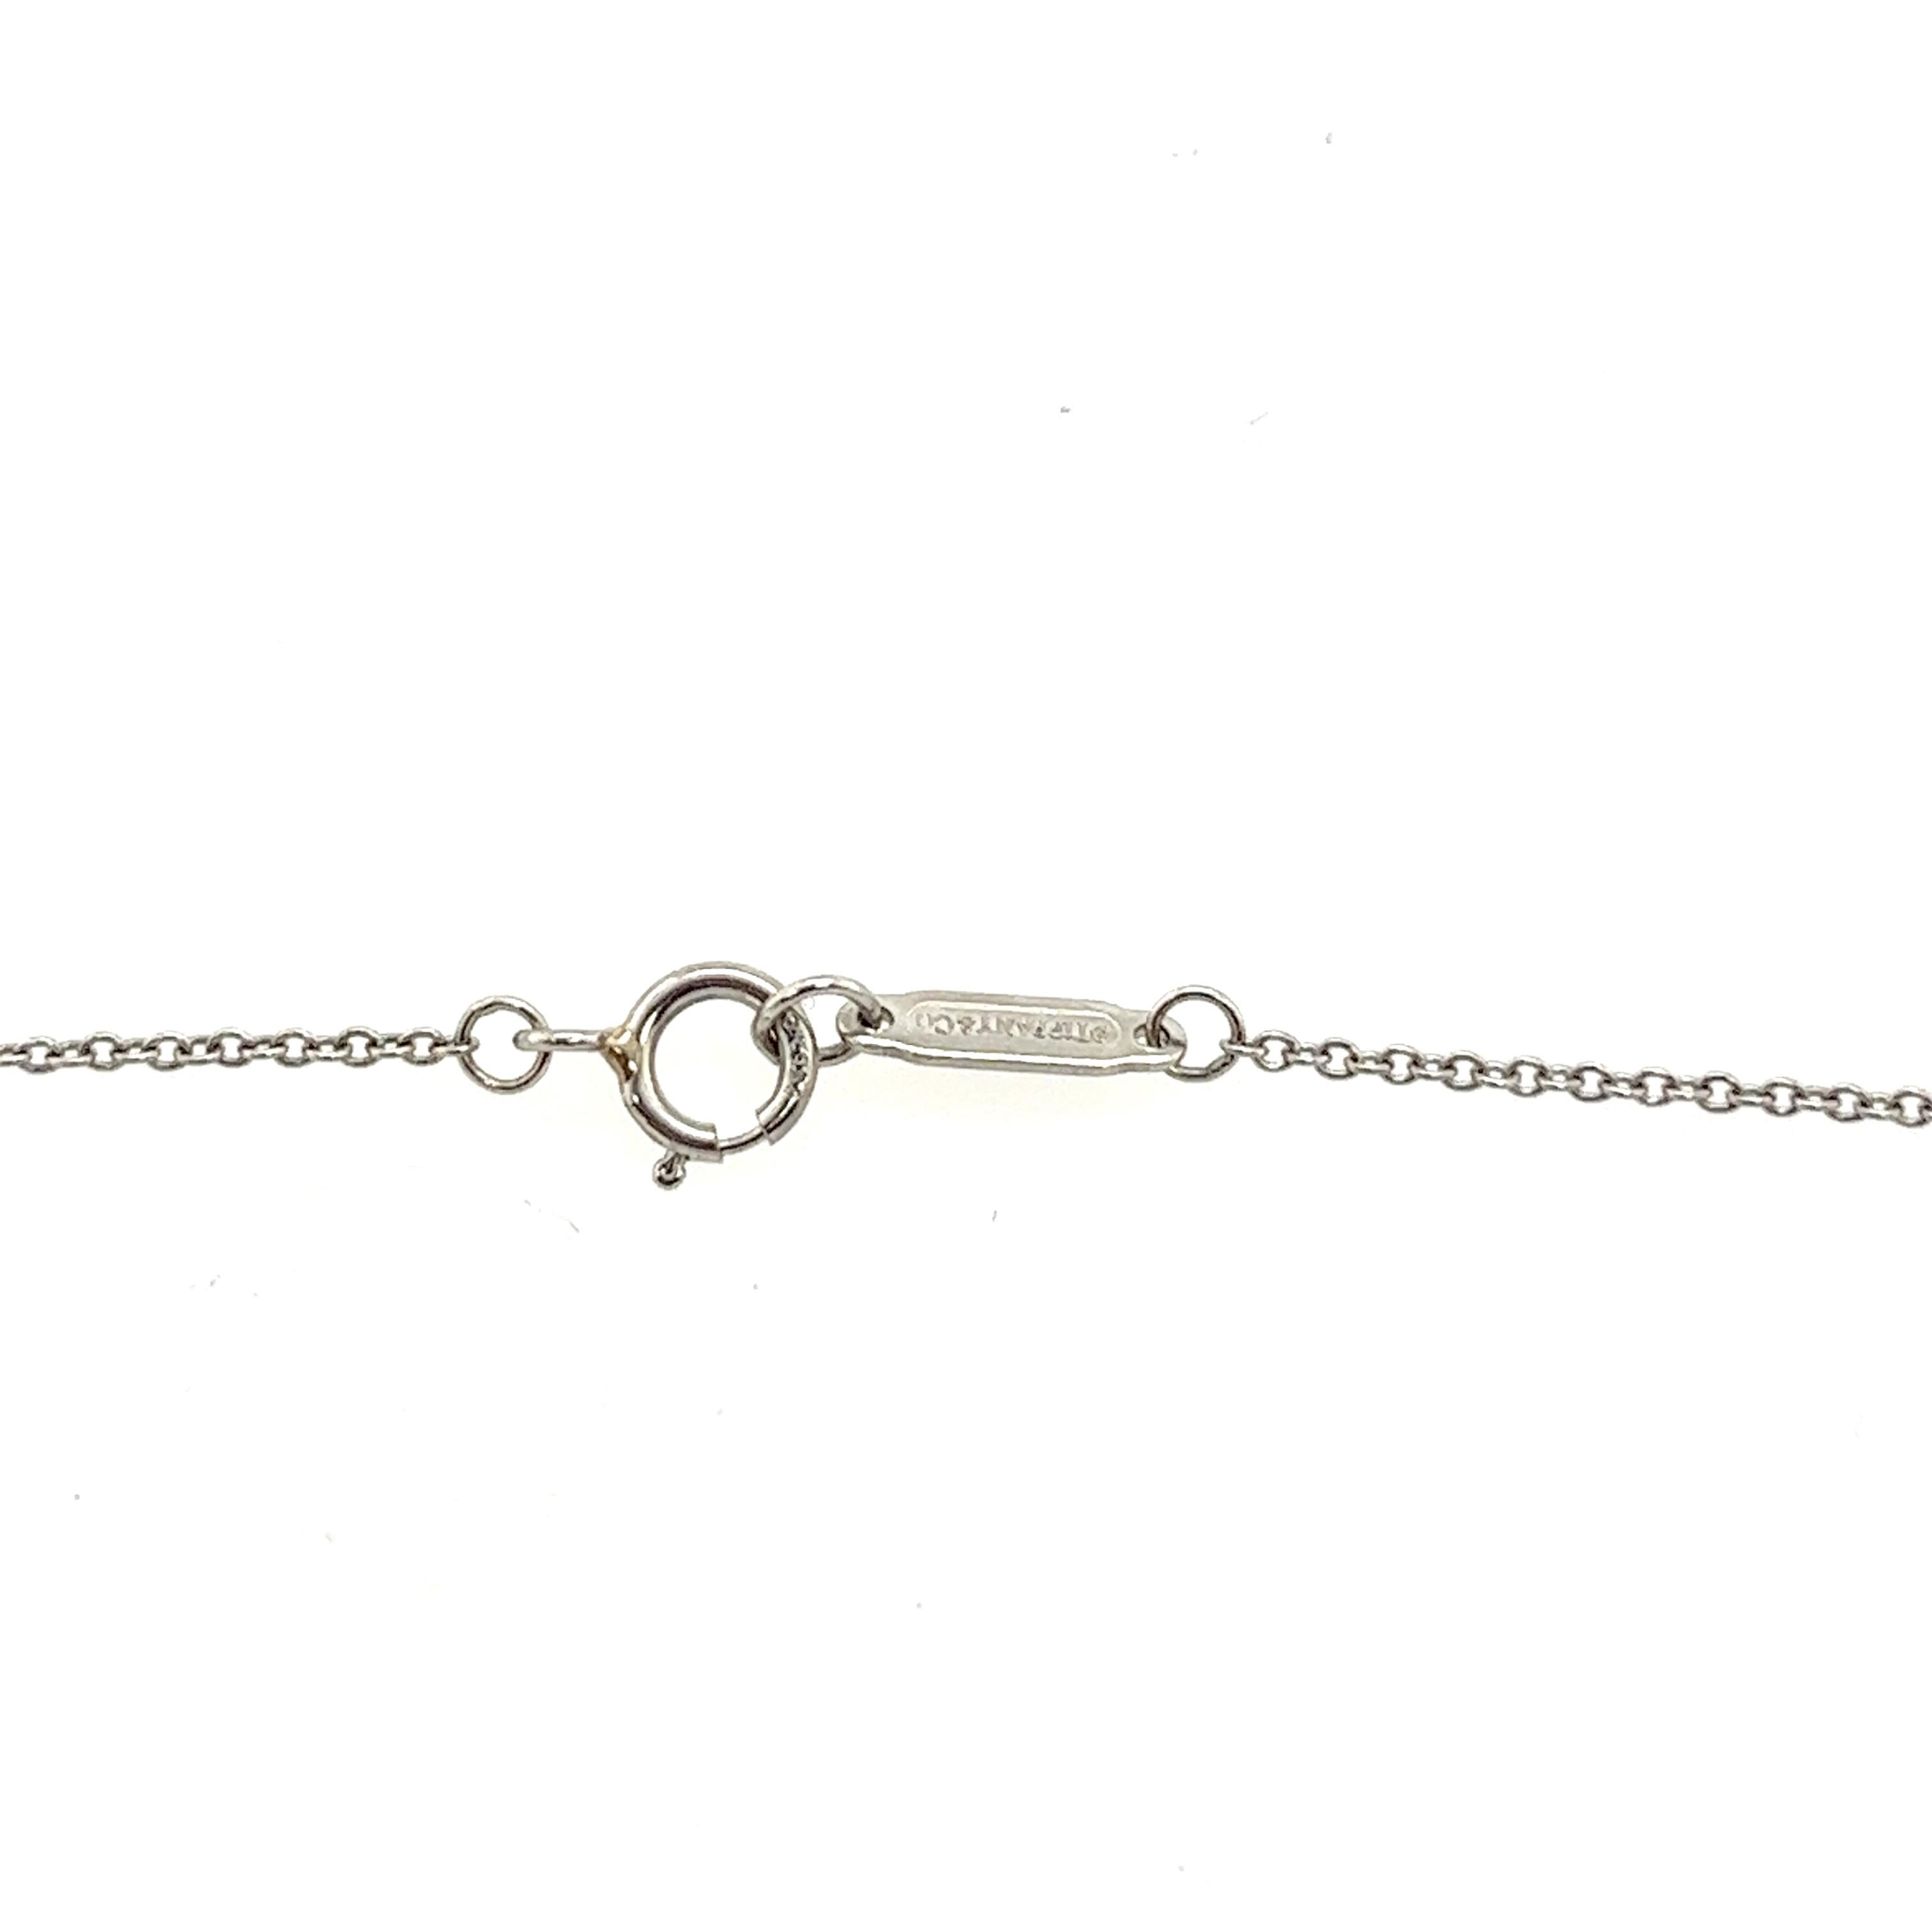 Brilliant Cut Rare Tiffany & Co. Fleur de Lis Diamond Platinum Key Pendant Necklace For Sale